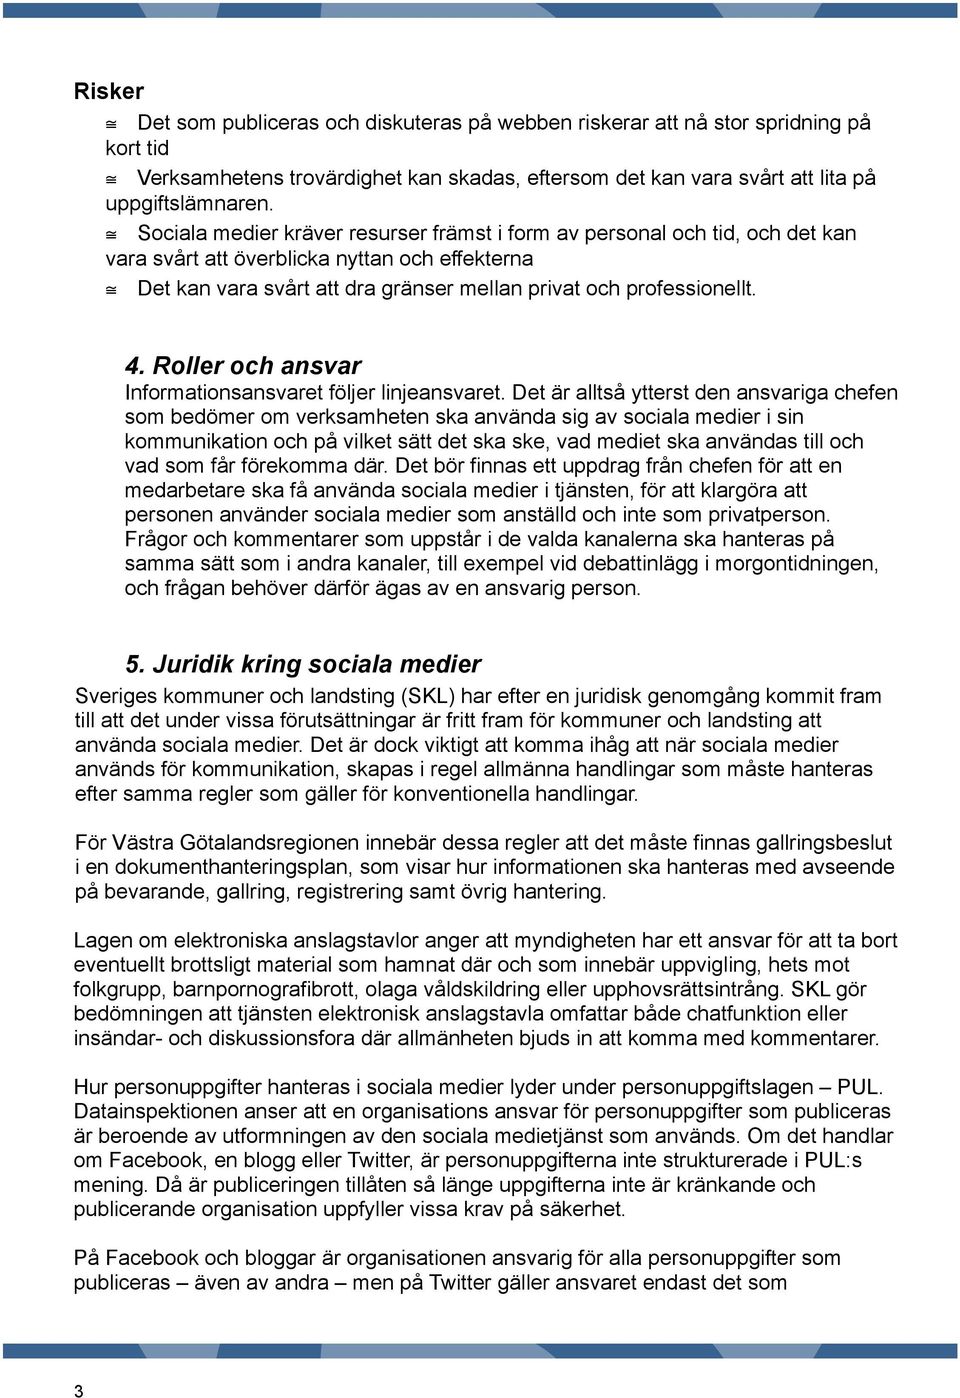 Att använda sociala medier råd till verksamheter och medarbetare i Västra  Götalandsregionen - PDF Free Download